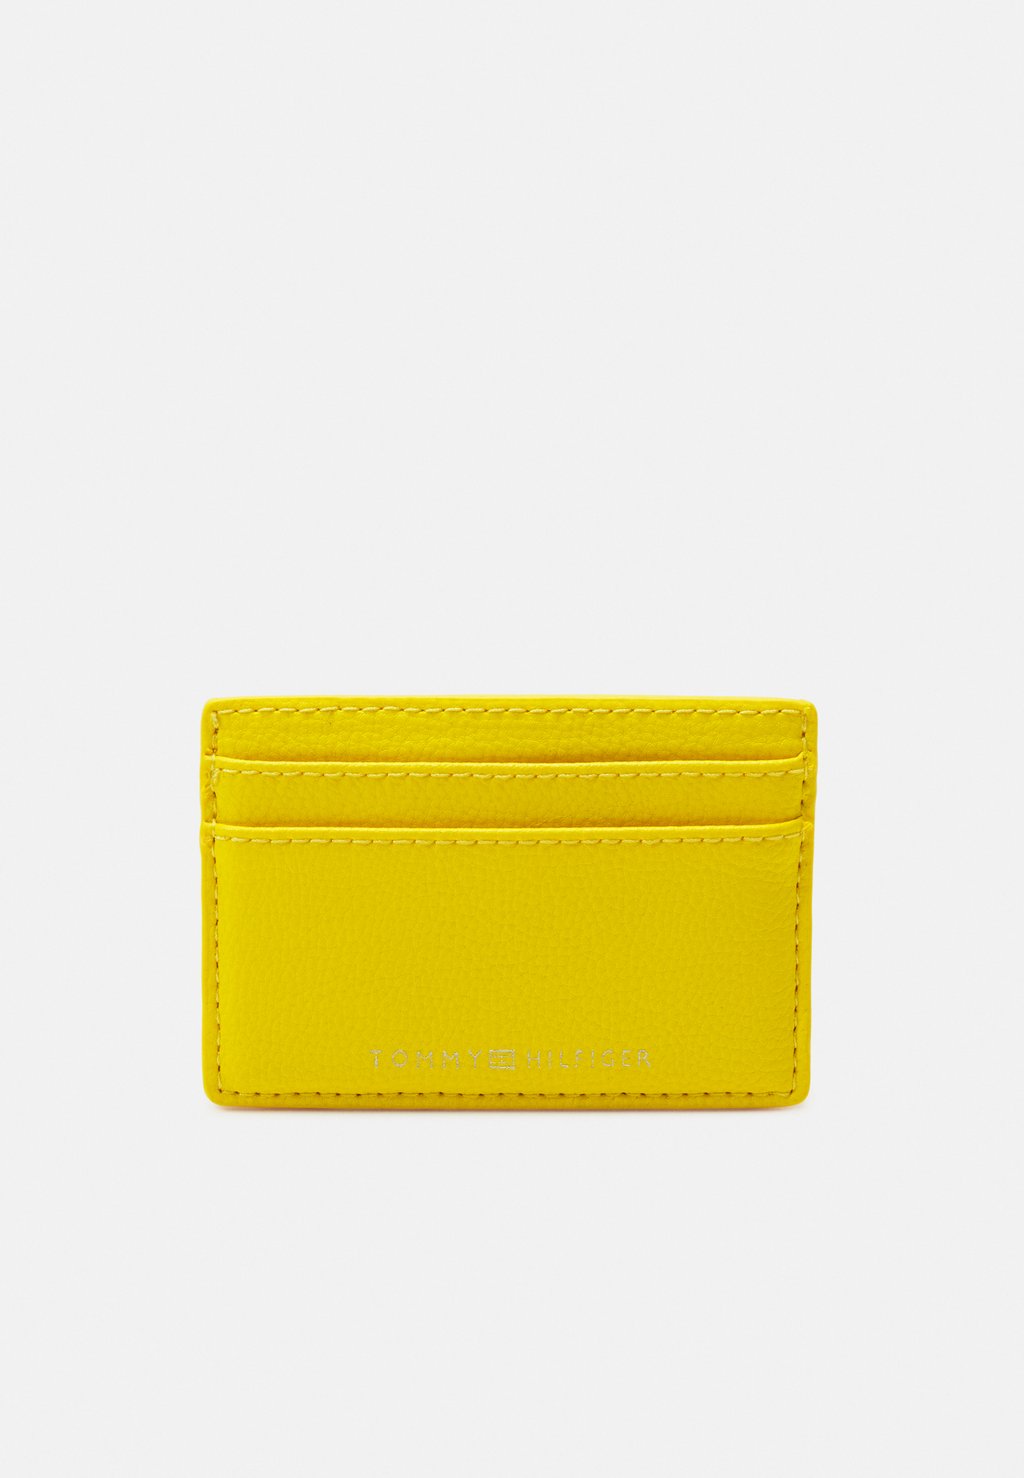 Бумажник Tommy Hilfiger, желтый бумажник экокожа желтый